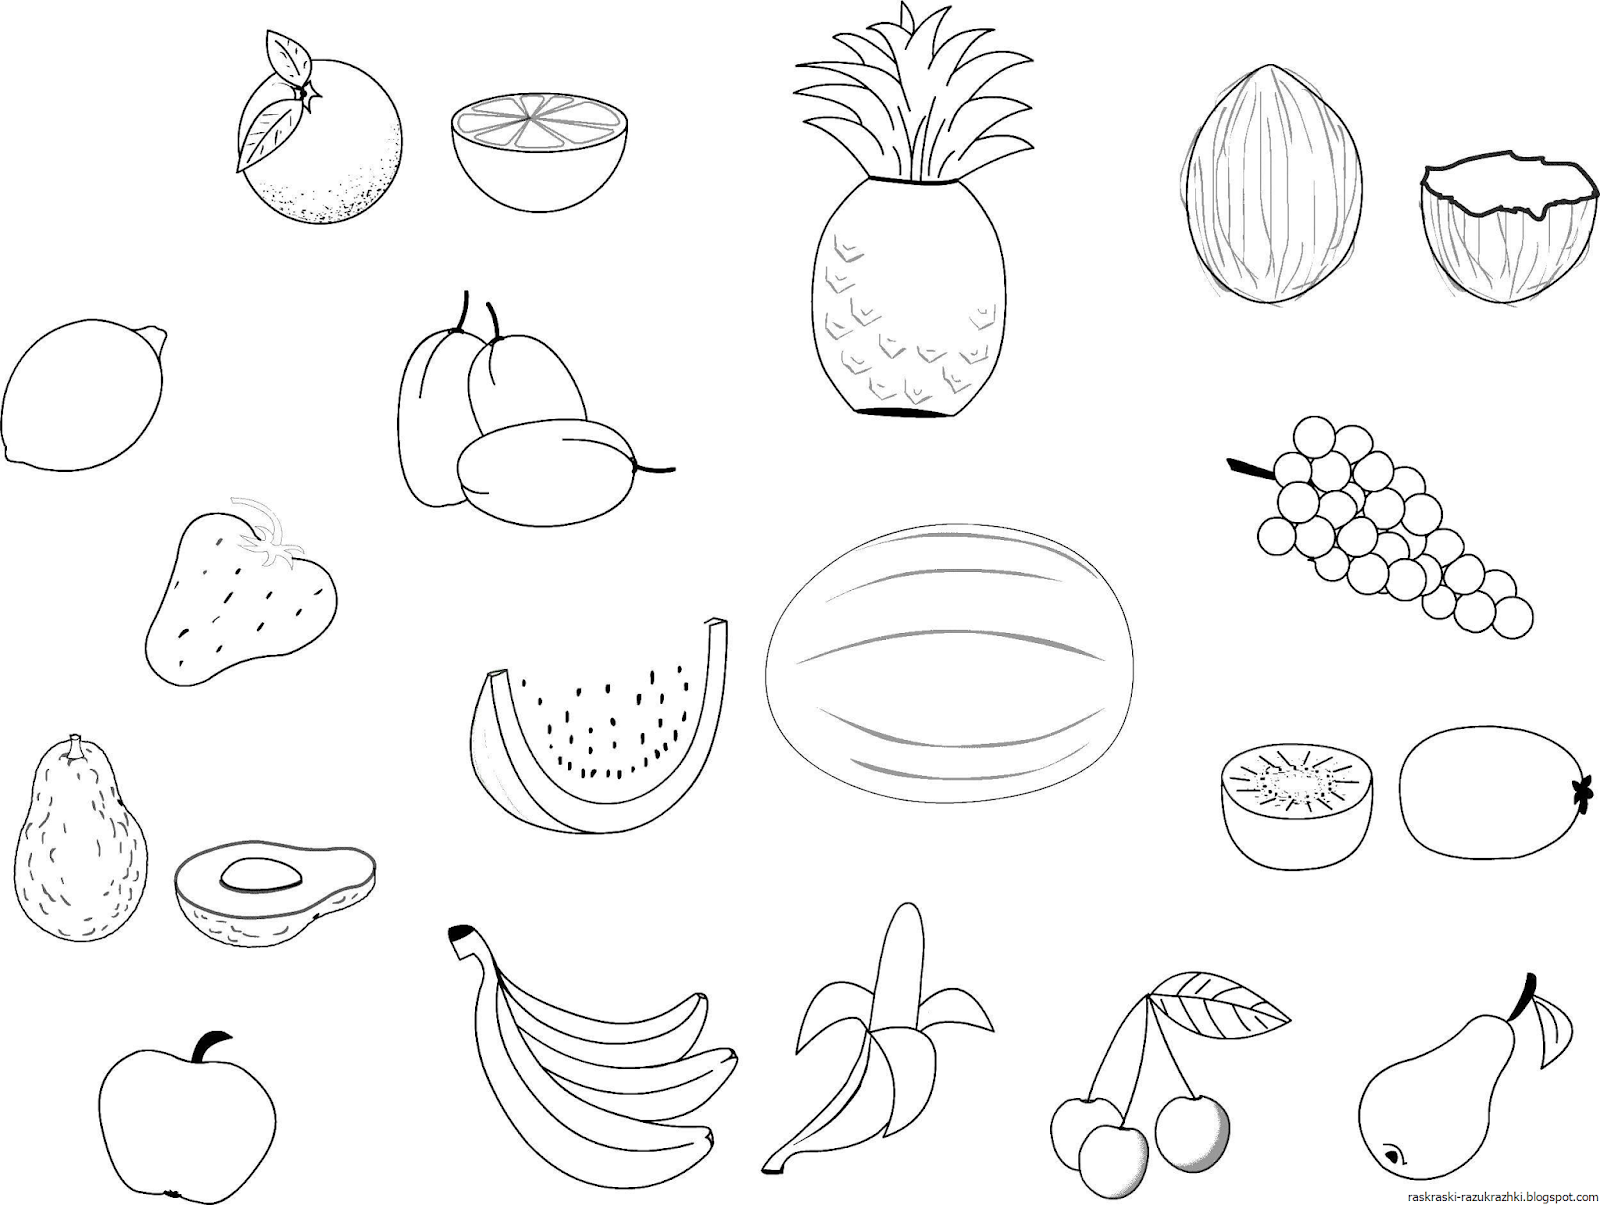 Популярные разукрашки раскраска овощи и фрукты — распечатать бесплатно а4 формат . Страница 2